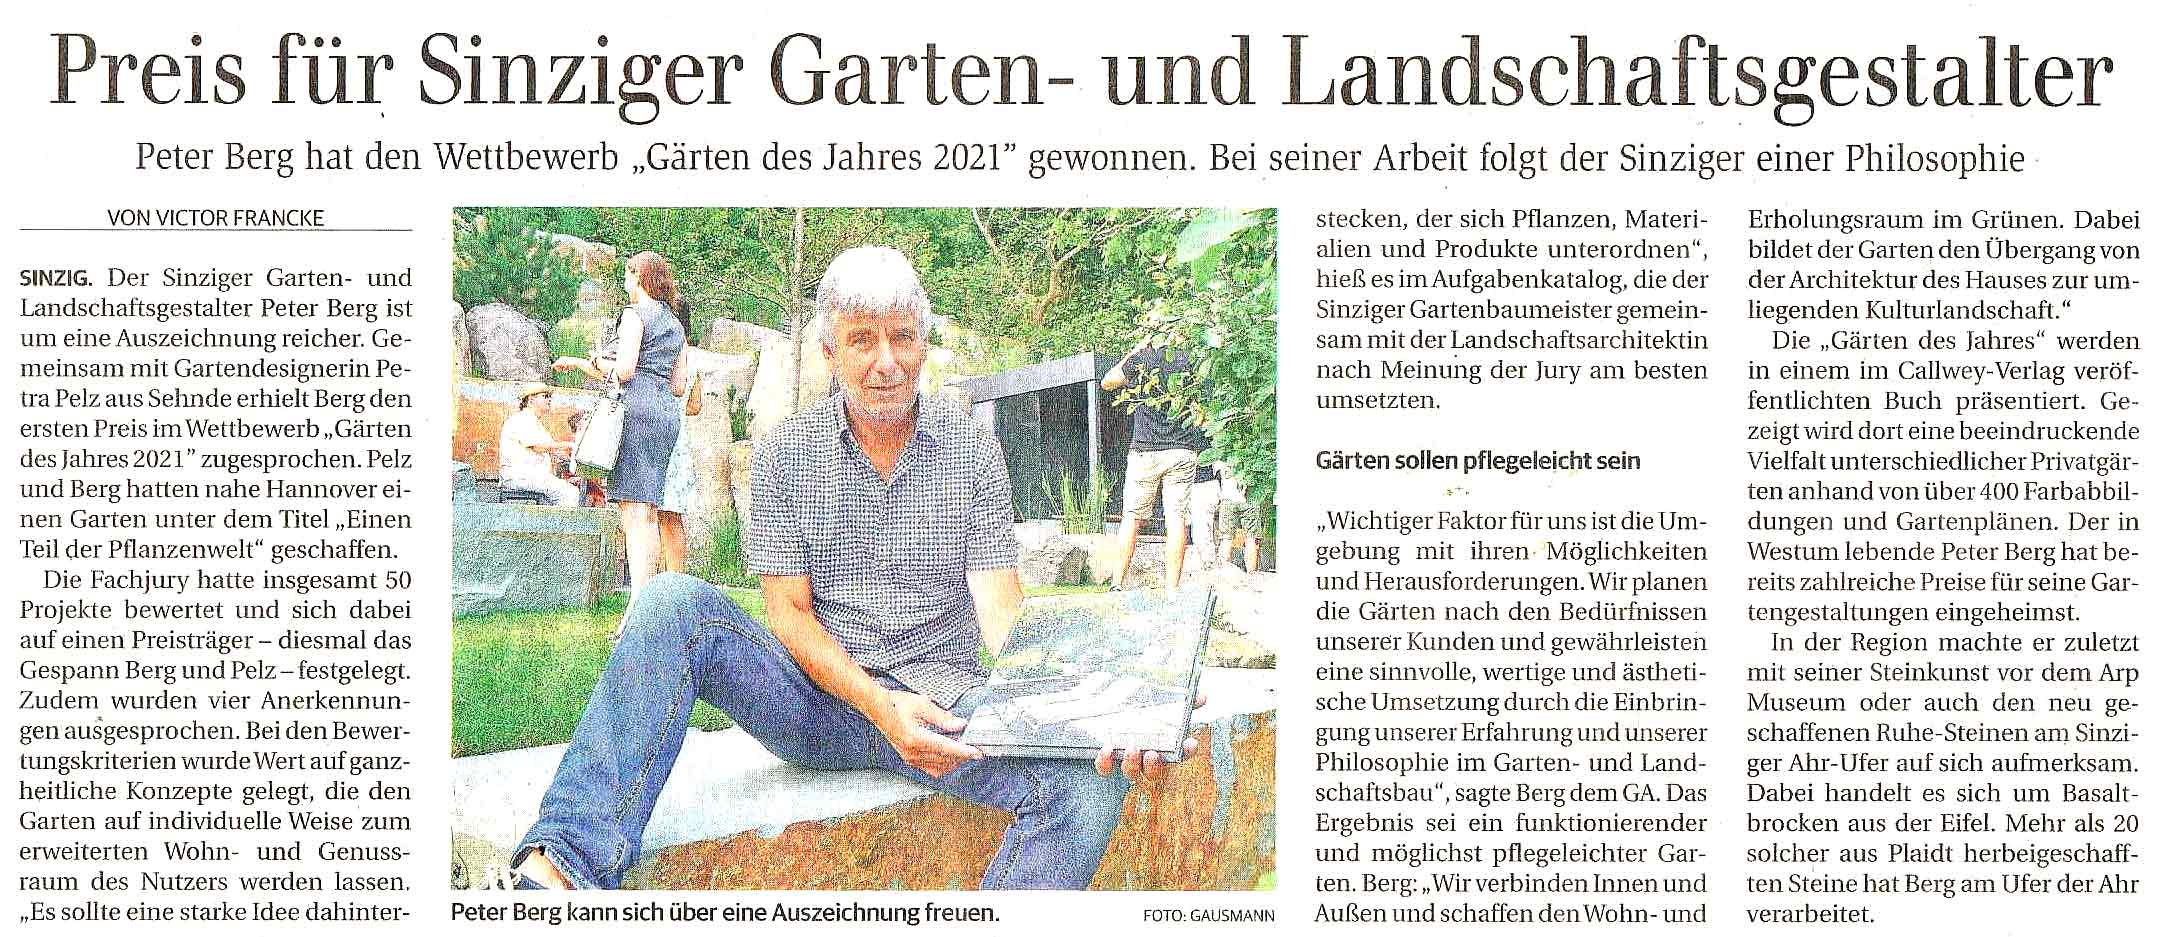 Artikel im General Anzeiger Bonn - Preis für Sinziger Gartendesigner Peter Berg